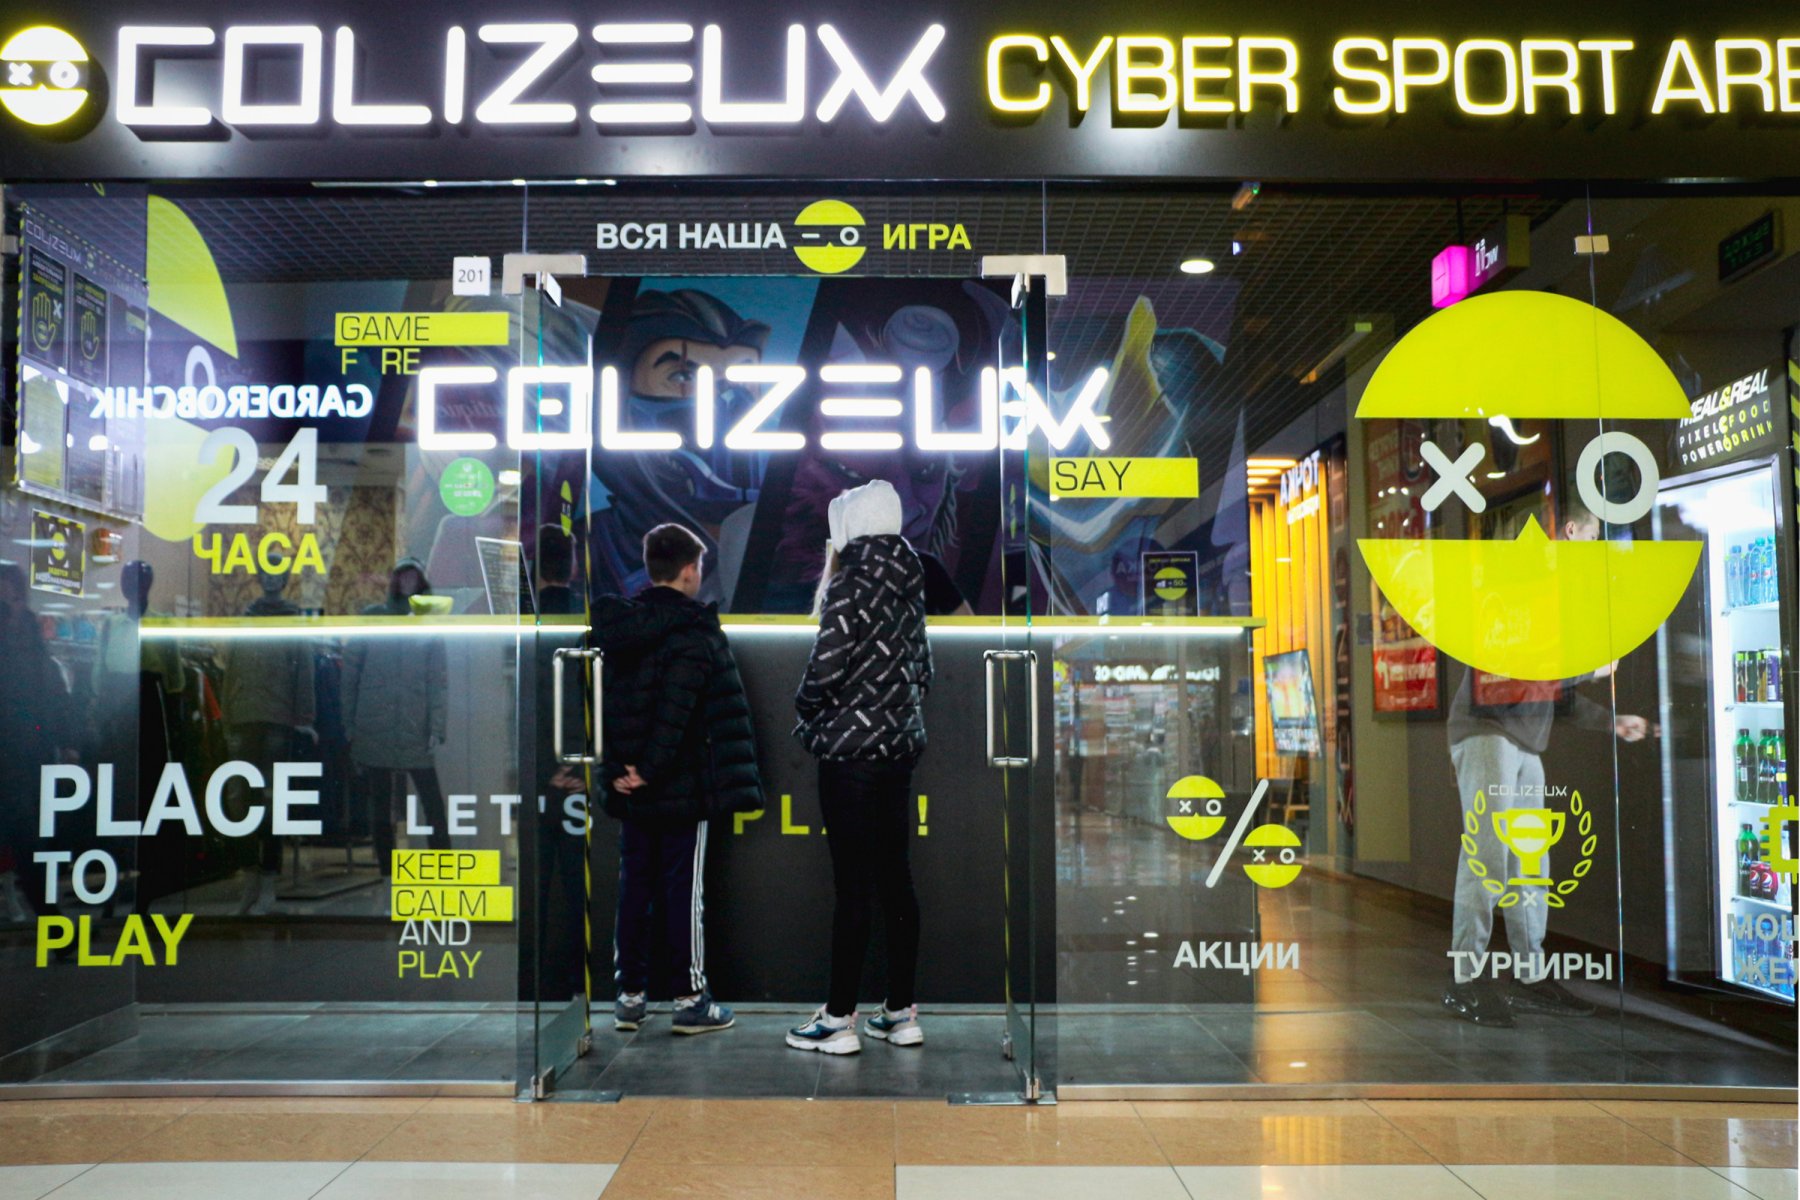 COLIZEUM, сеть киберспортивных арен, Кустанайская улица, 6, 2 этаж